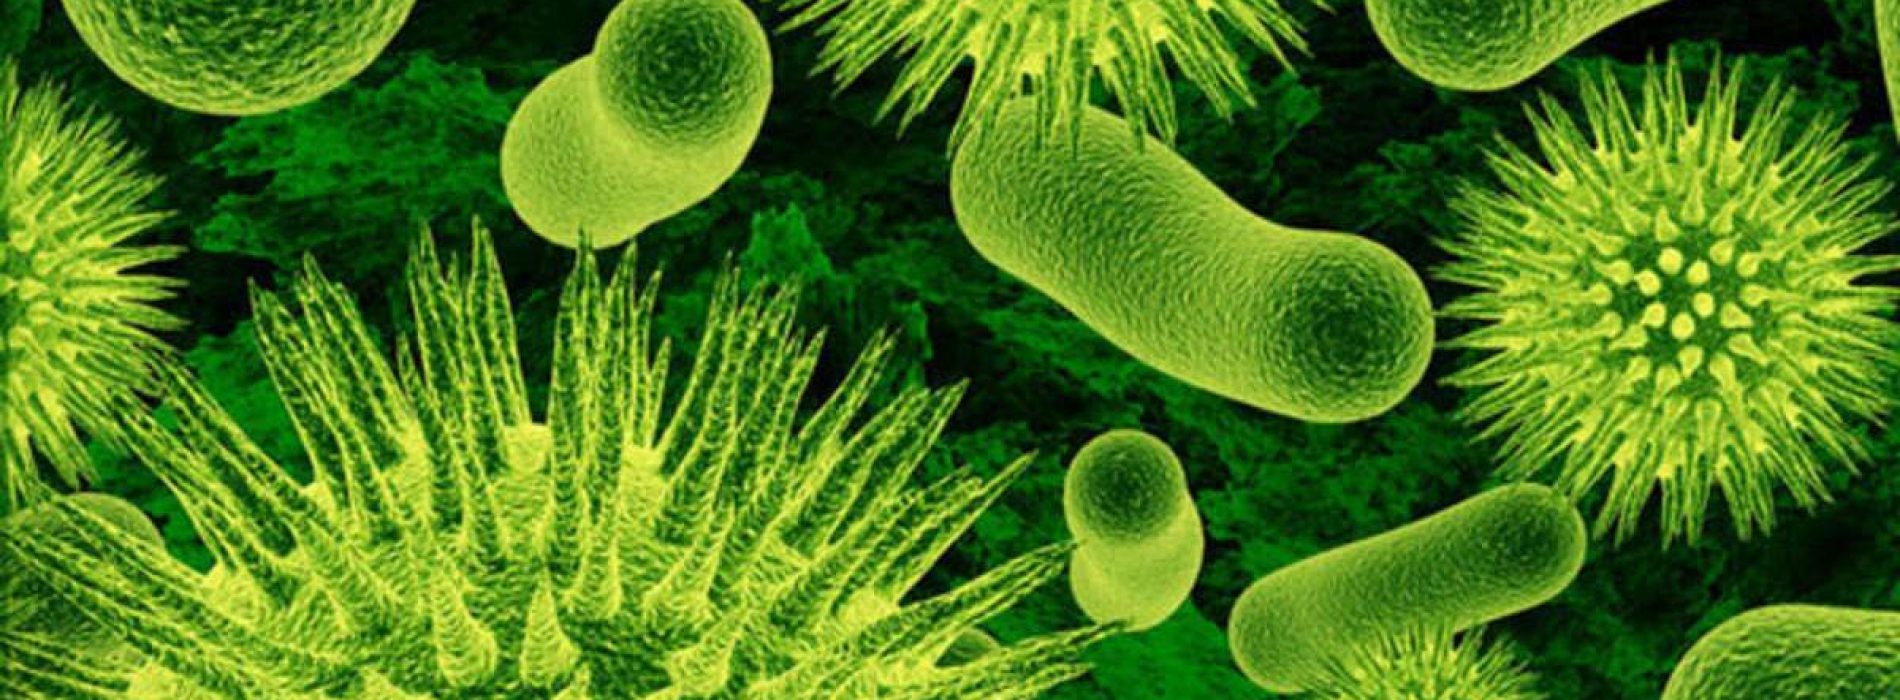 Je wasmachine kan medicijnbestendige bacteriën kweken